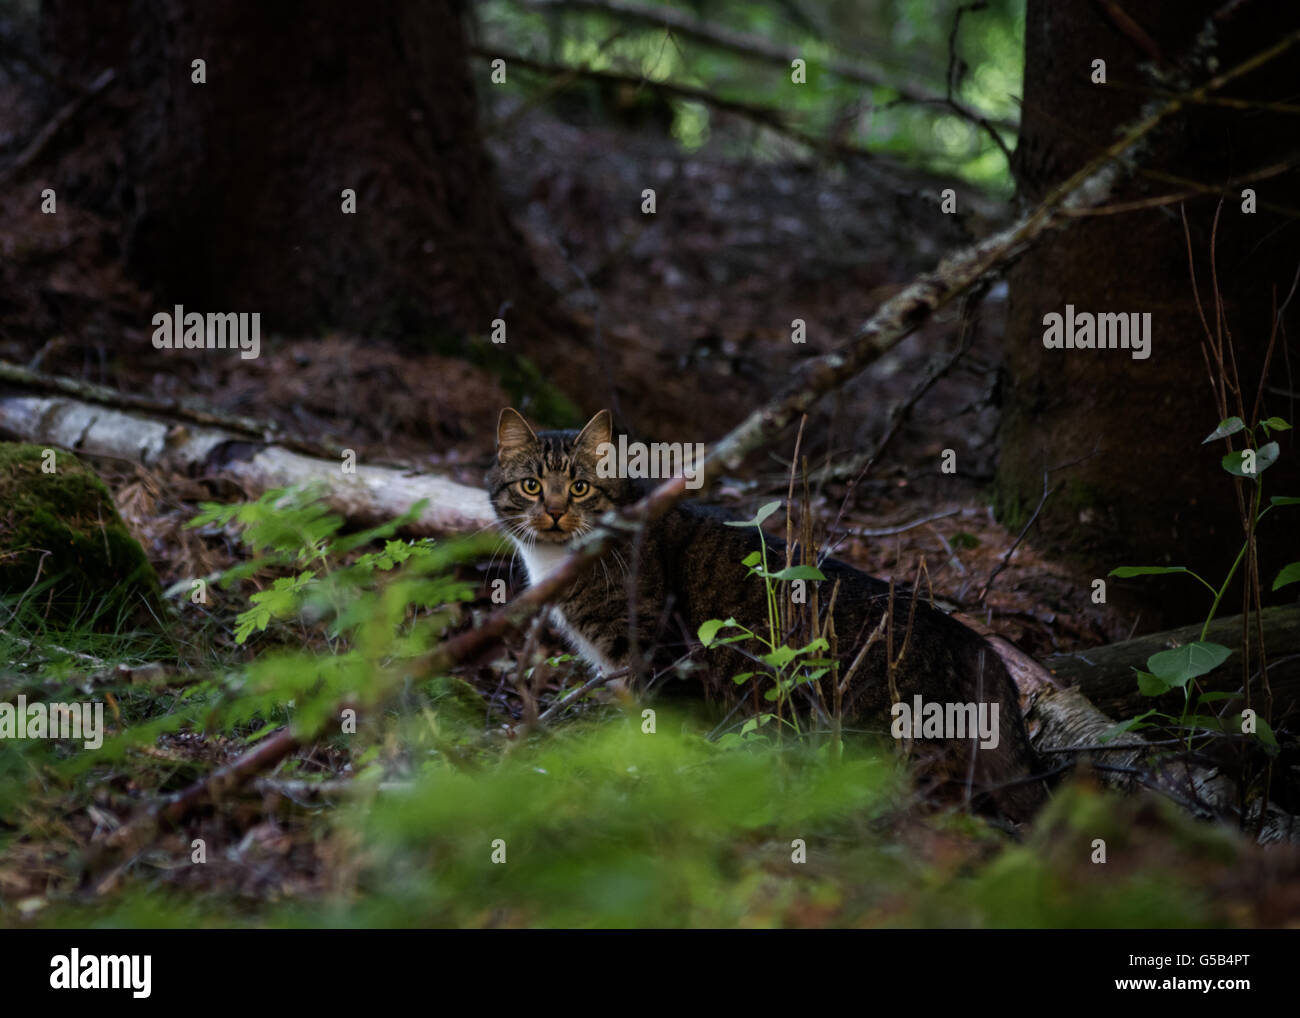 Un gato atigrado, bien camuflados en el bosque, mirando directamente a la cámara. Foto de stock